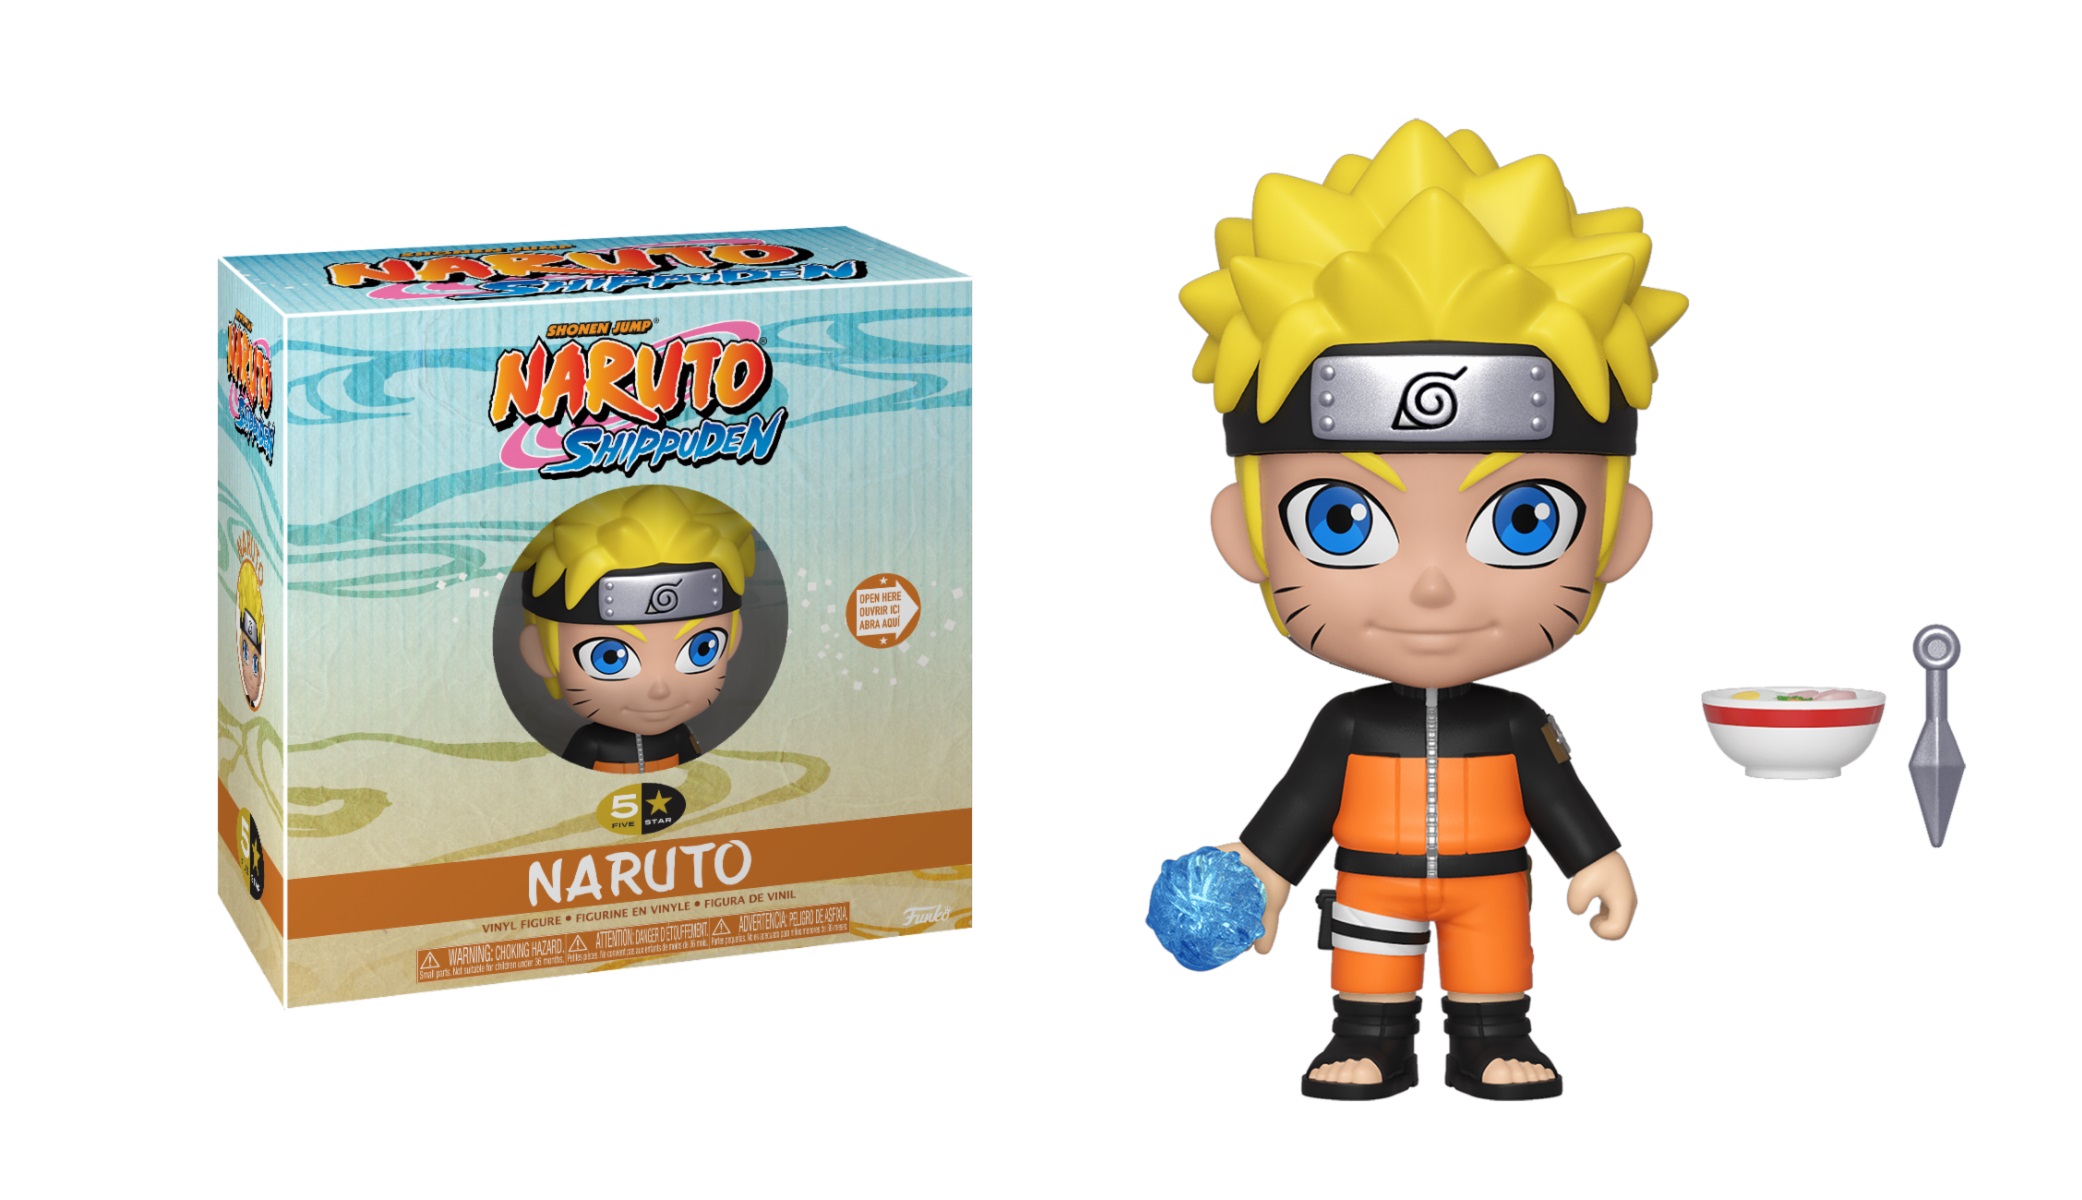 Naruto 5 Star Naruto